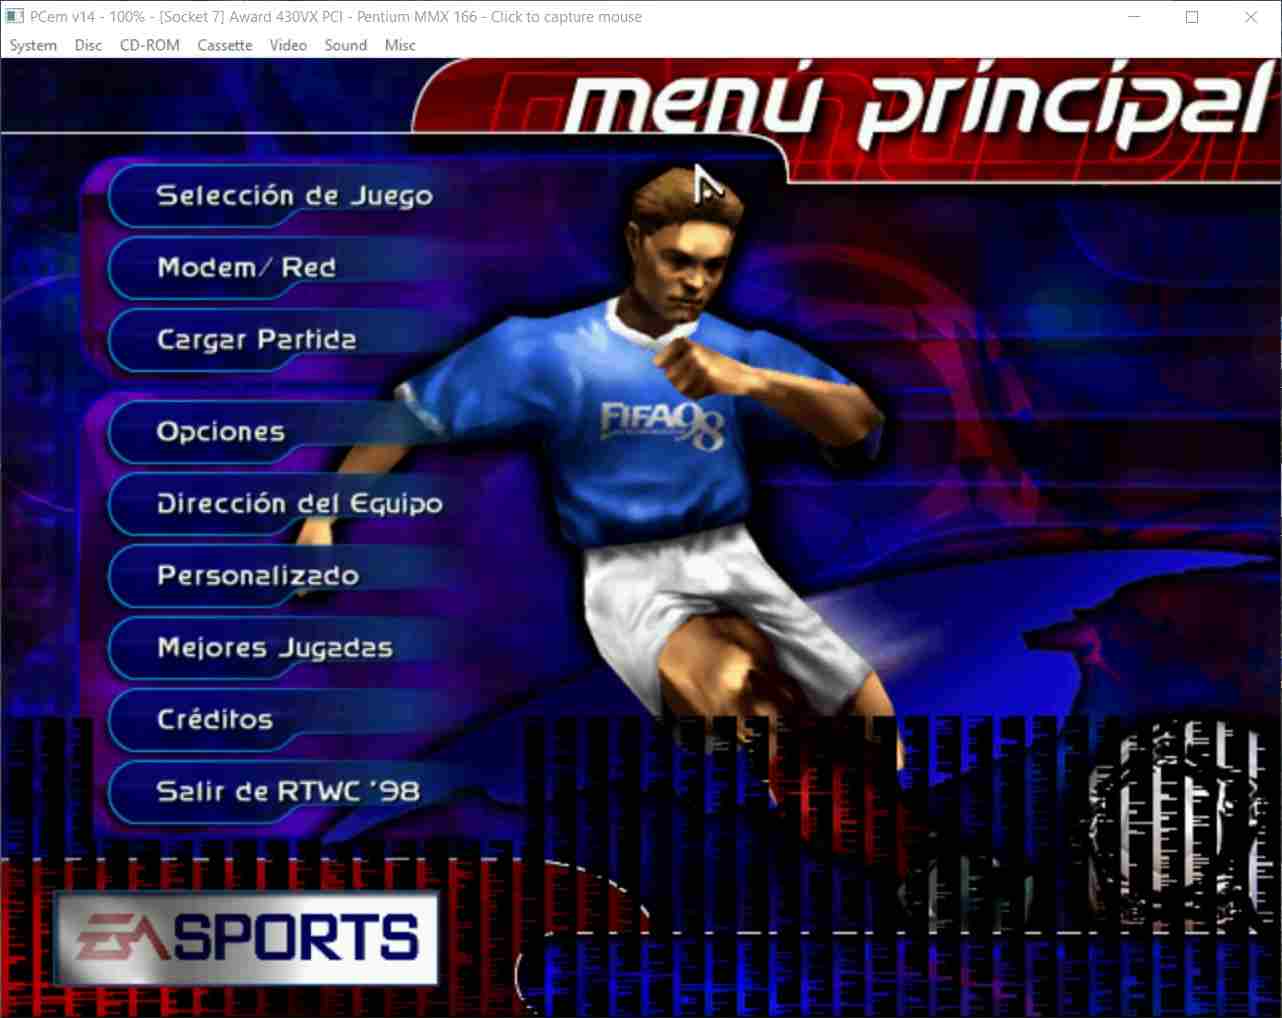 FIFA 98 menu